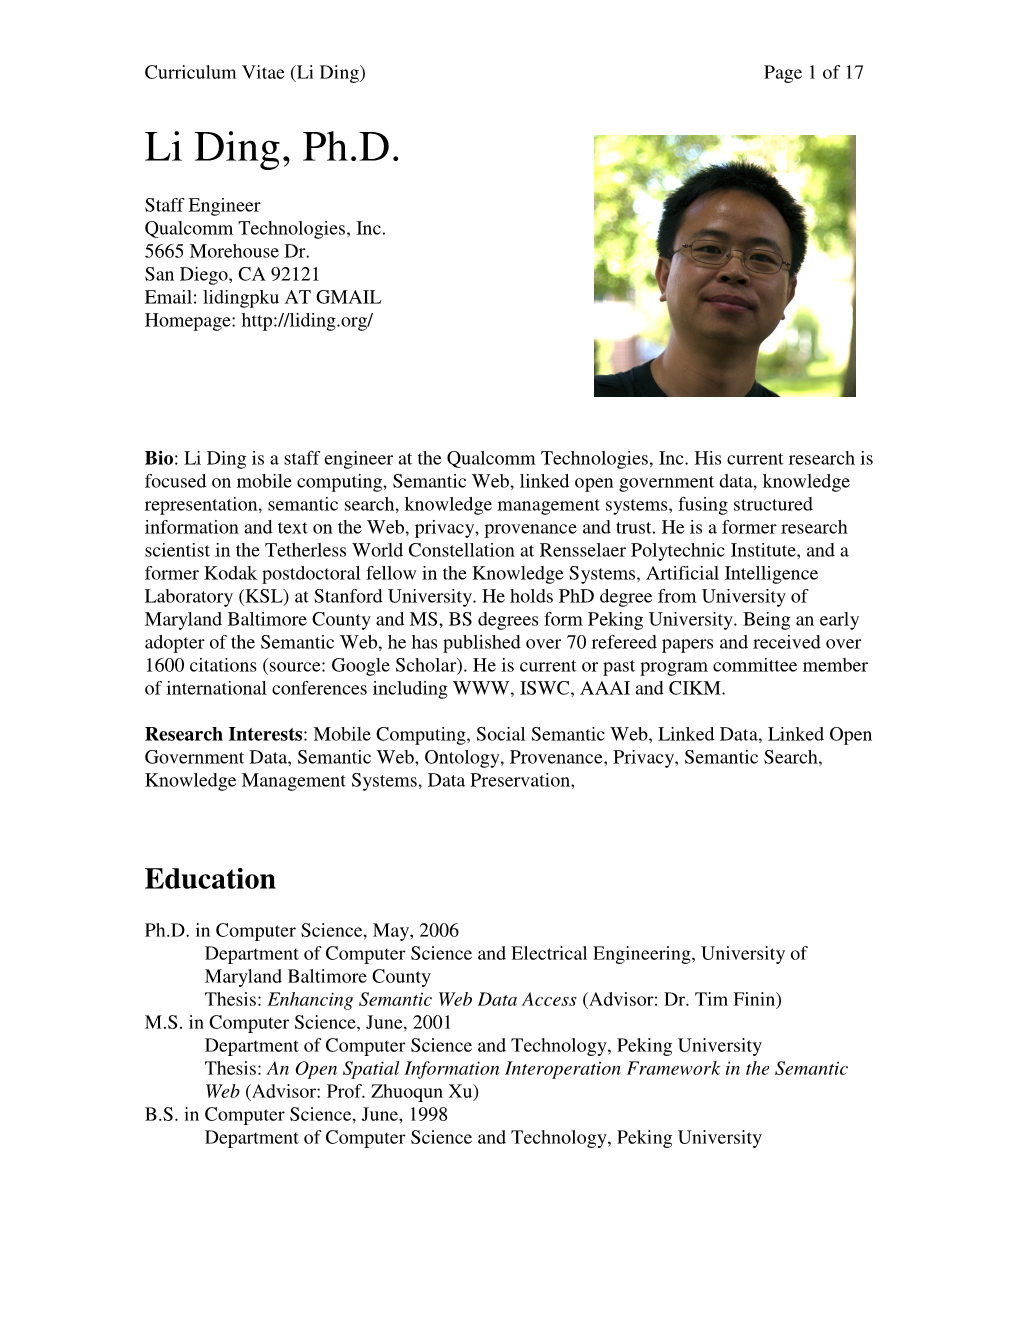 Li Ding, Ph.D